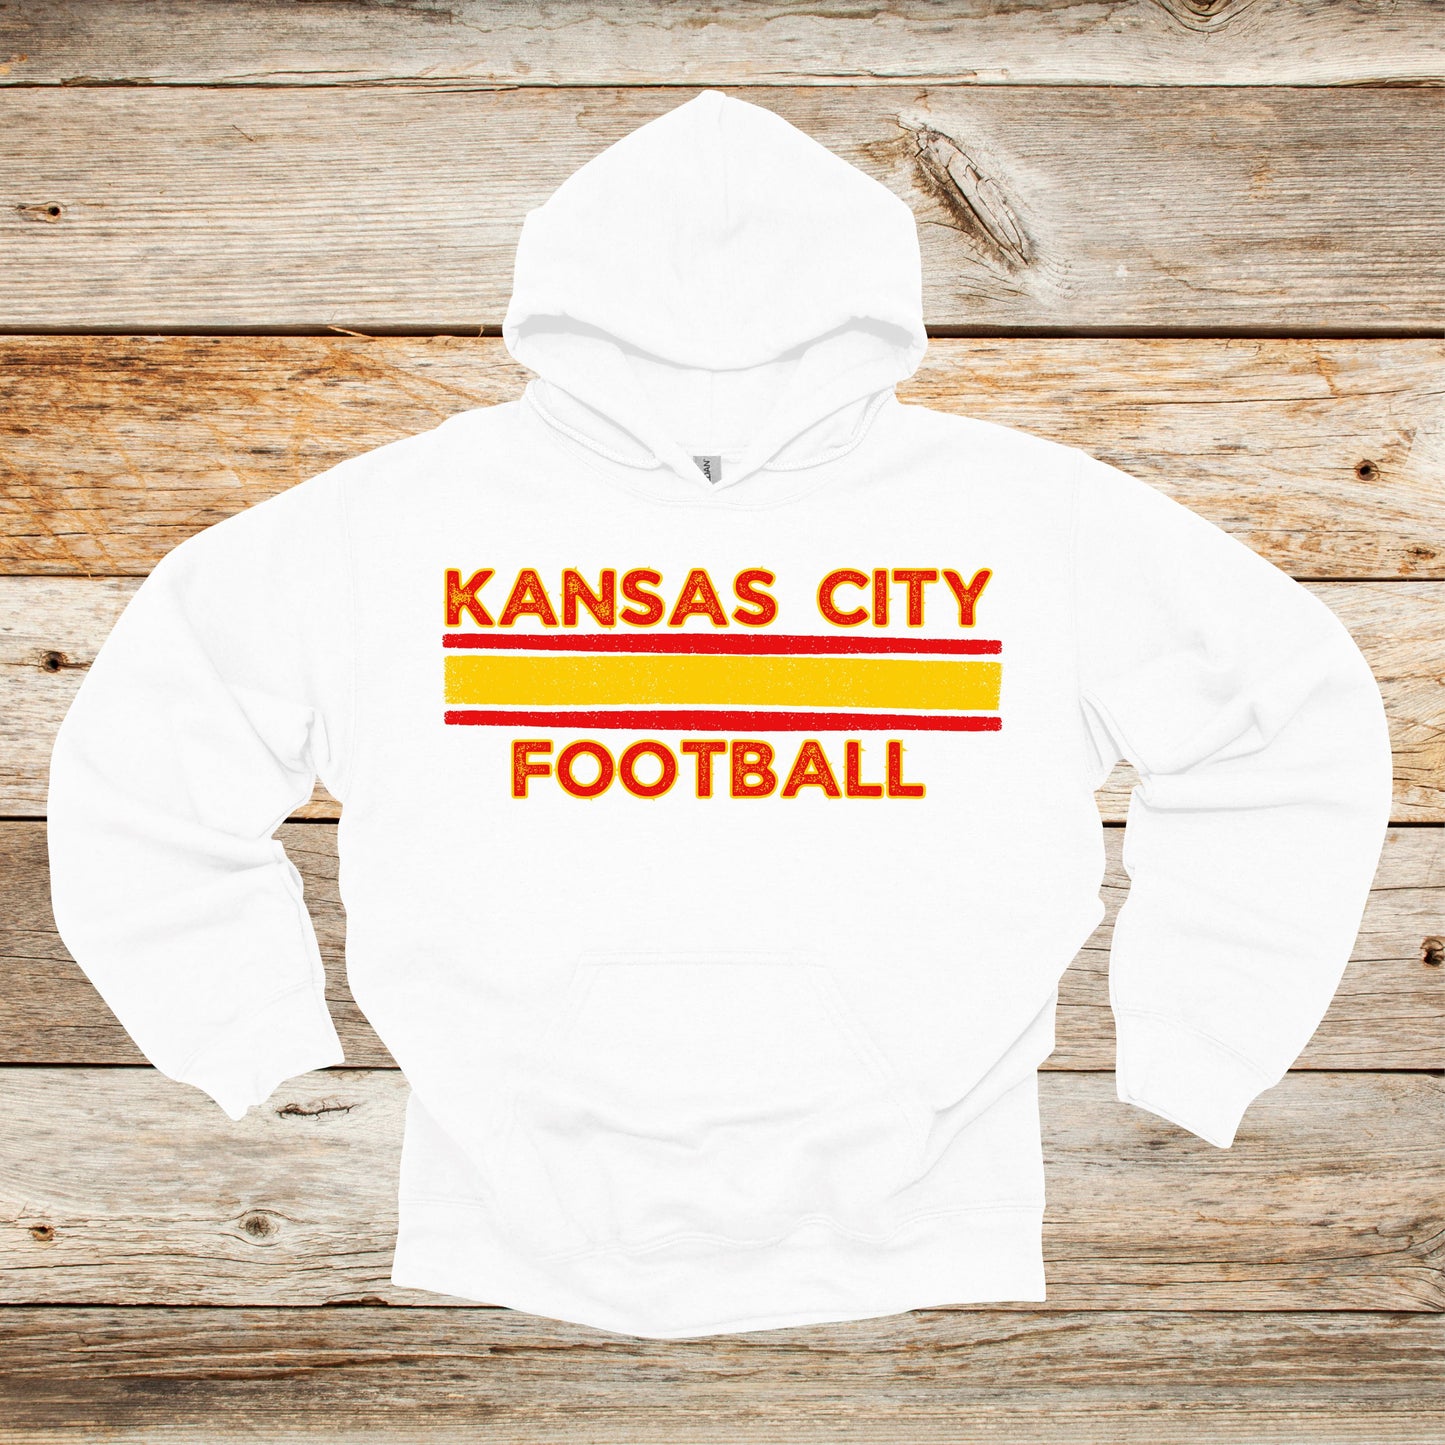 Football Crewneck and Hooded Sweatshirt - Kansas City Chiefs - Kansas City Football - Adult and Children's Tee Shirts - Sports Hooded Sweatshirt Graphic Avenue Hooded Sweatshirt White Adult Medium